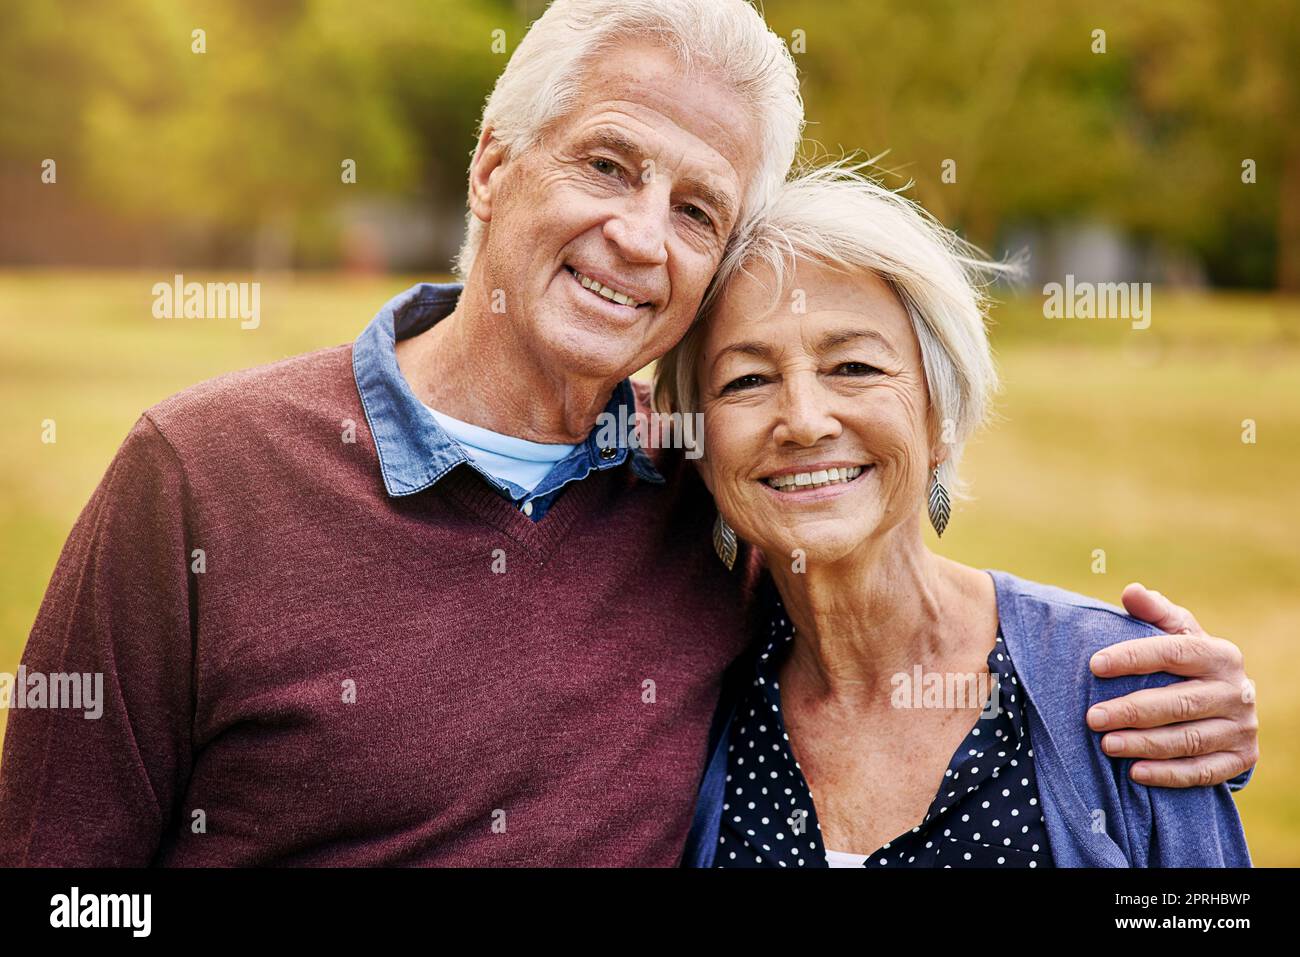 Notre relation continue à s'améliorer. Portrait d'un couple aîné heureux dans le parc. Banque D'Images